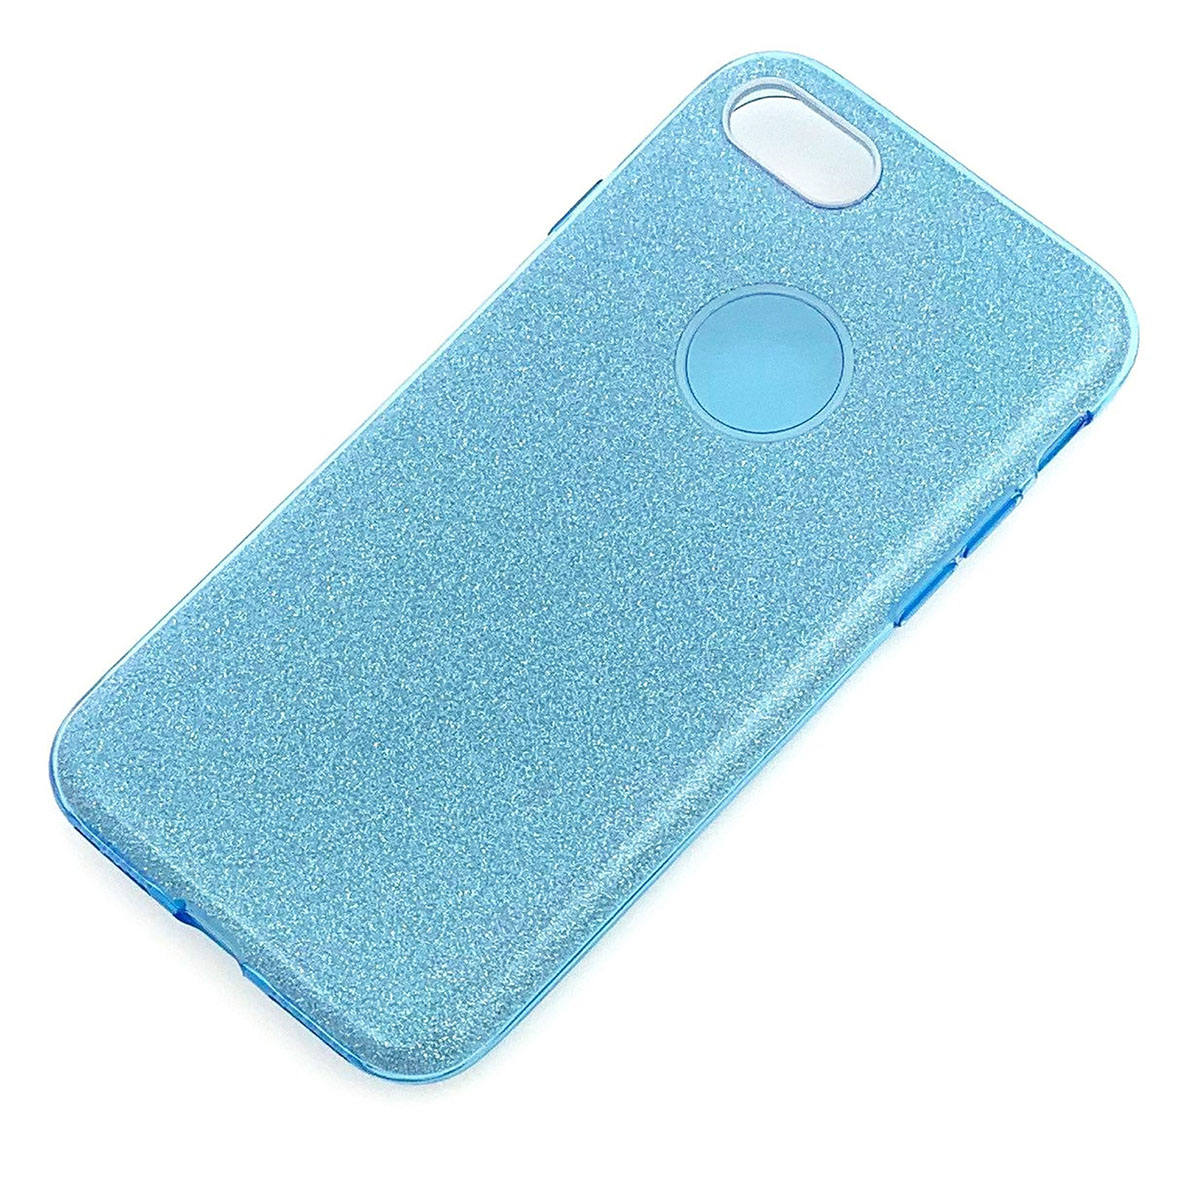 Чехол накладка для APPLE iPhone 7, iPhone 8, силикон, блестки, цвет голубой.